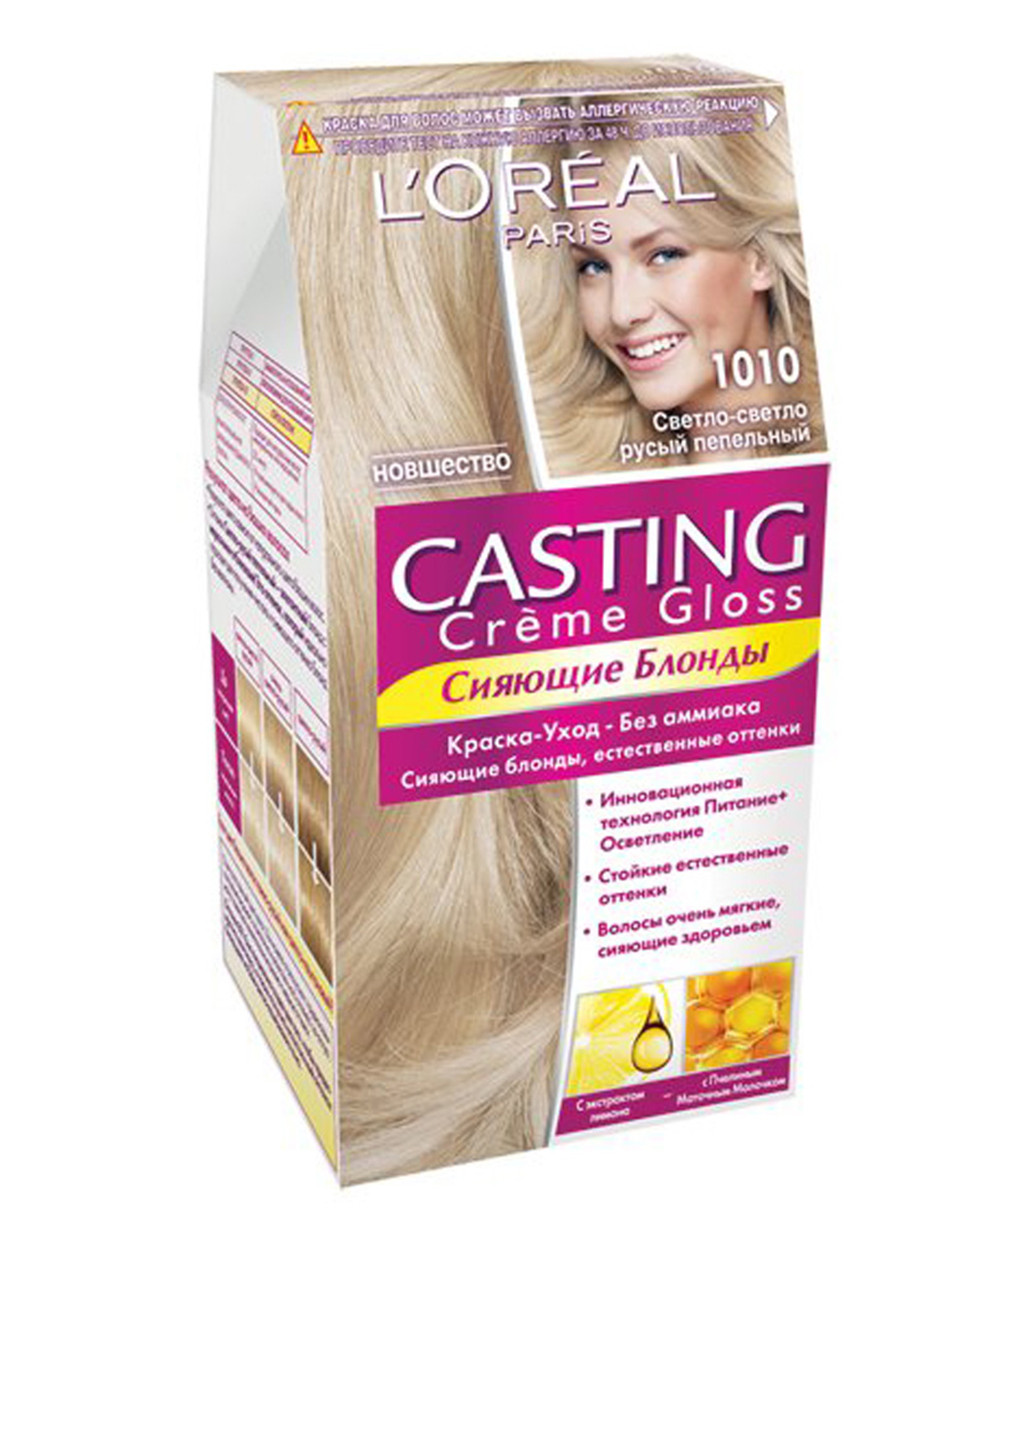 Фарба для волосся L'oreal Casting Creme Gloss 1010 Світло-світло-русявий попелястий L'Oreal Paris (88094896)